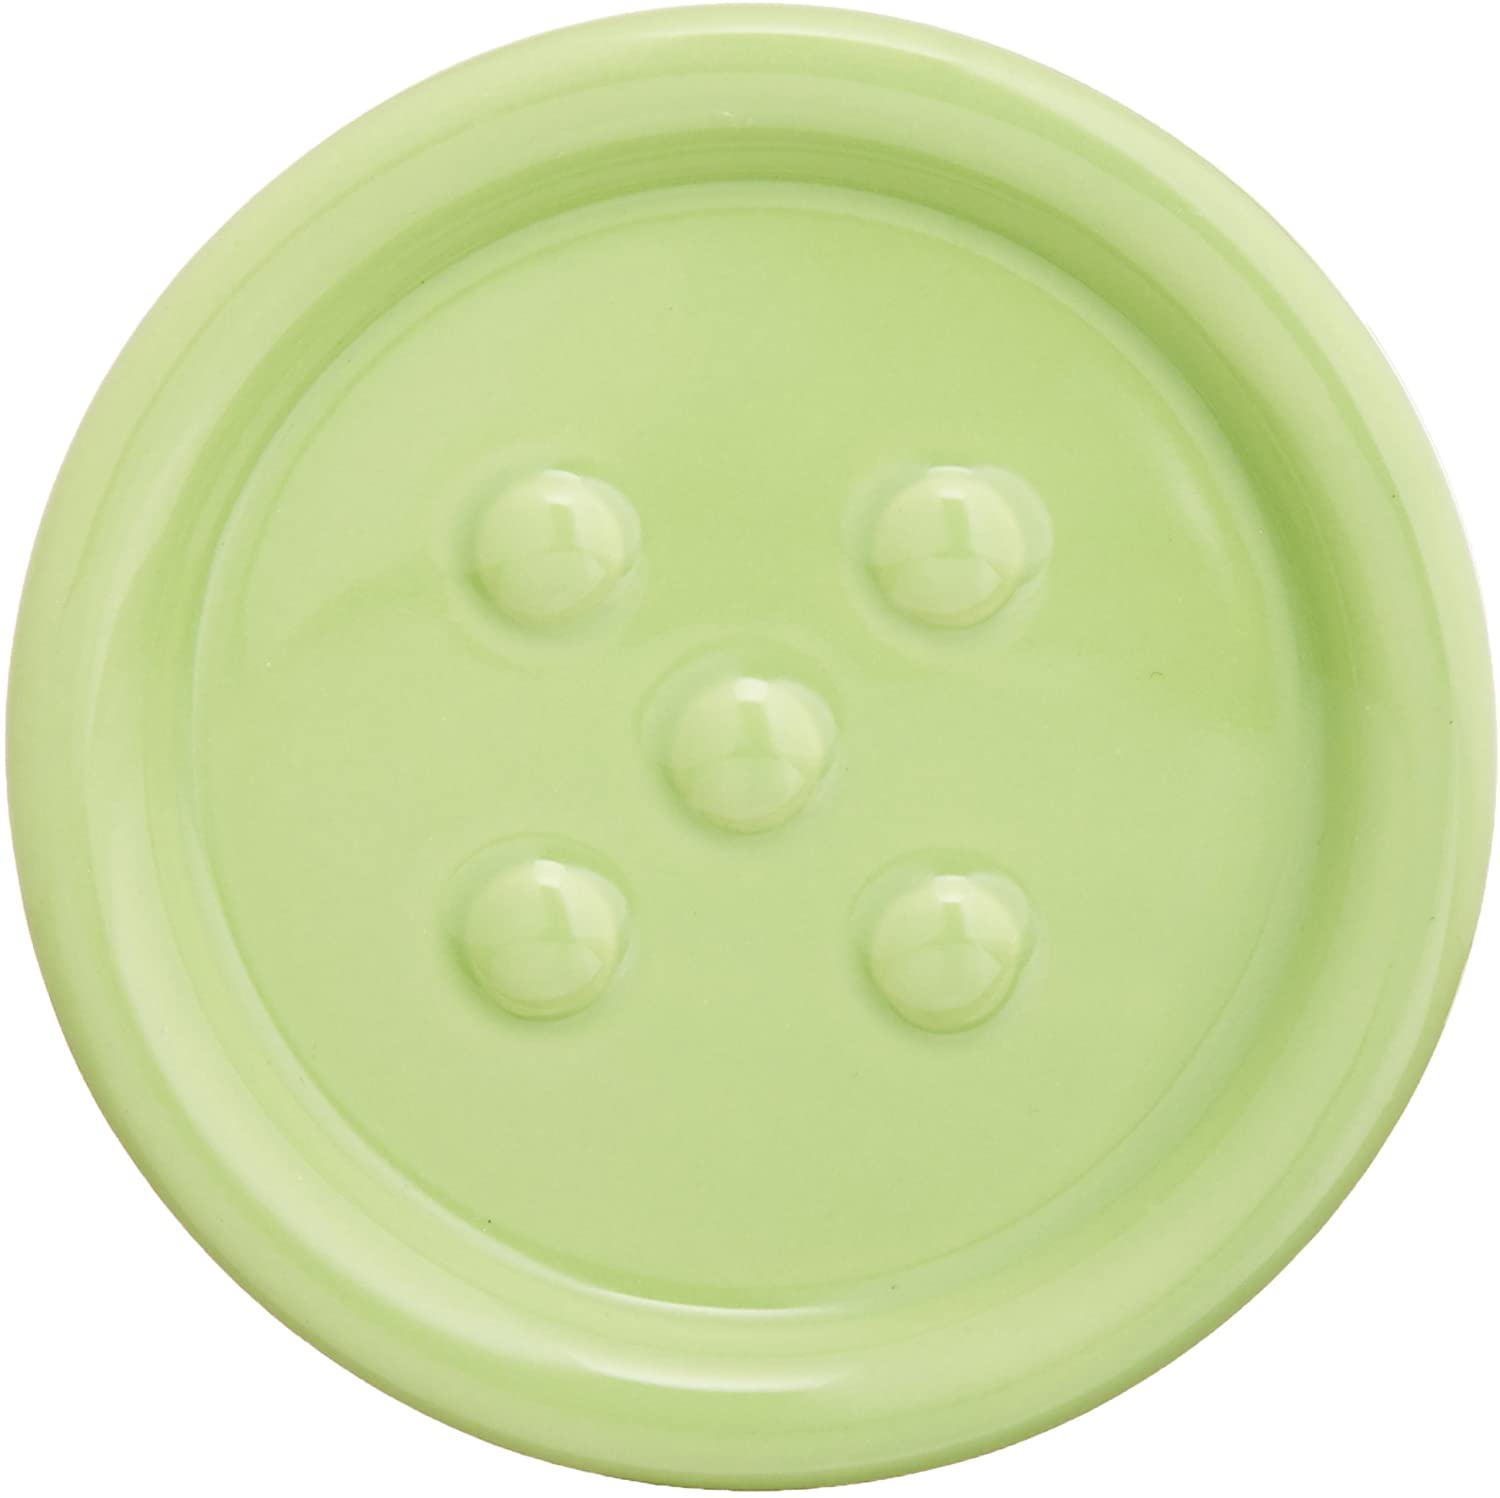 Seifenablage Polaris Green - Seifenschale ideal für Handseife, Keramik, 11 x 2.5 x 11 cm, Grün